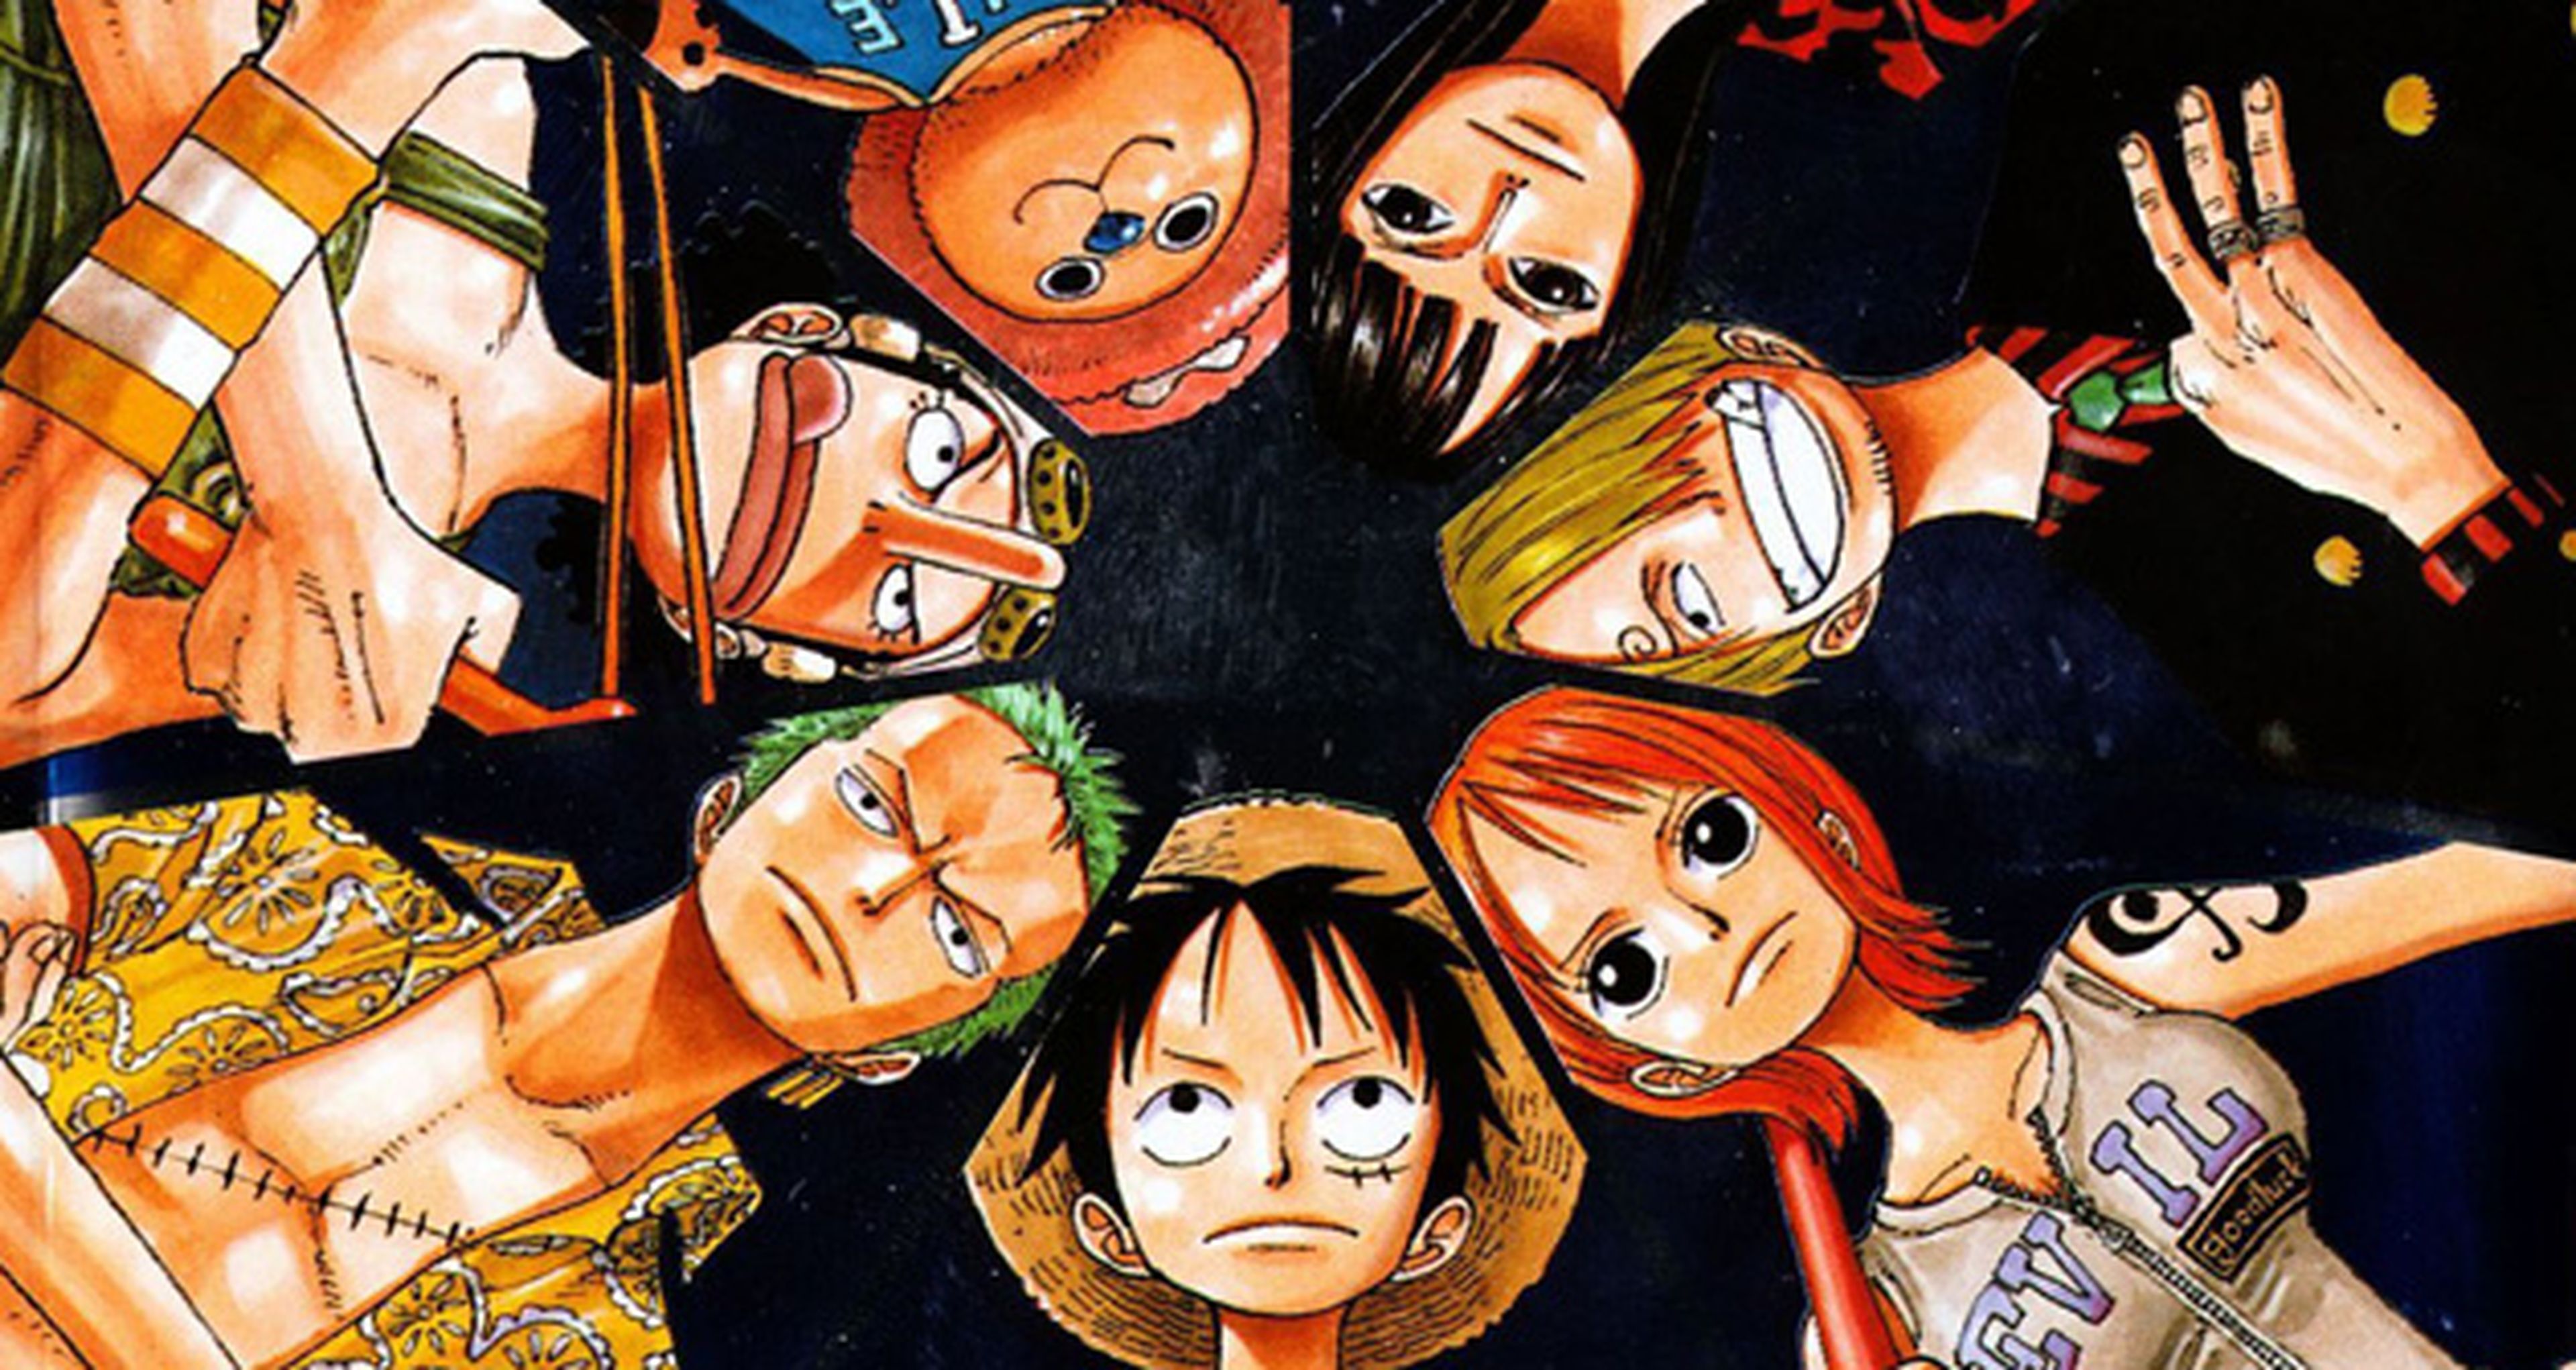 La segunda guía de One Piece llega en junio